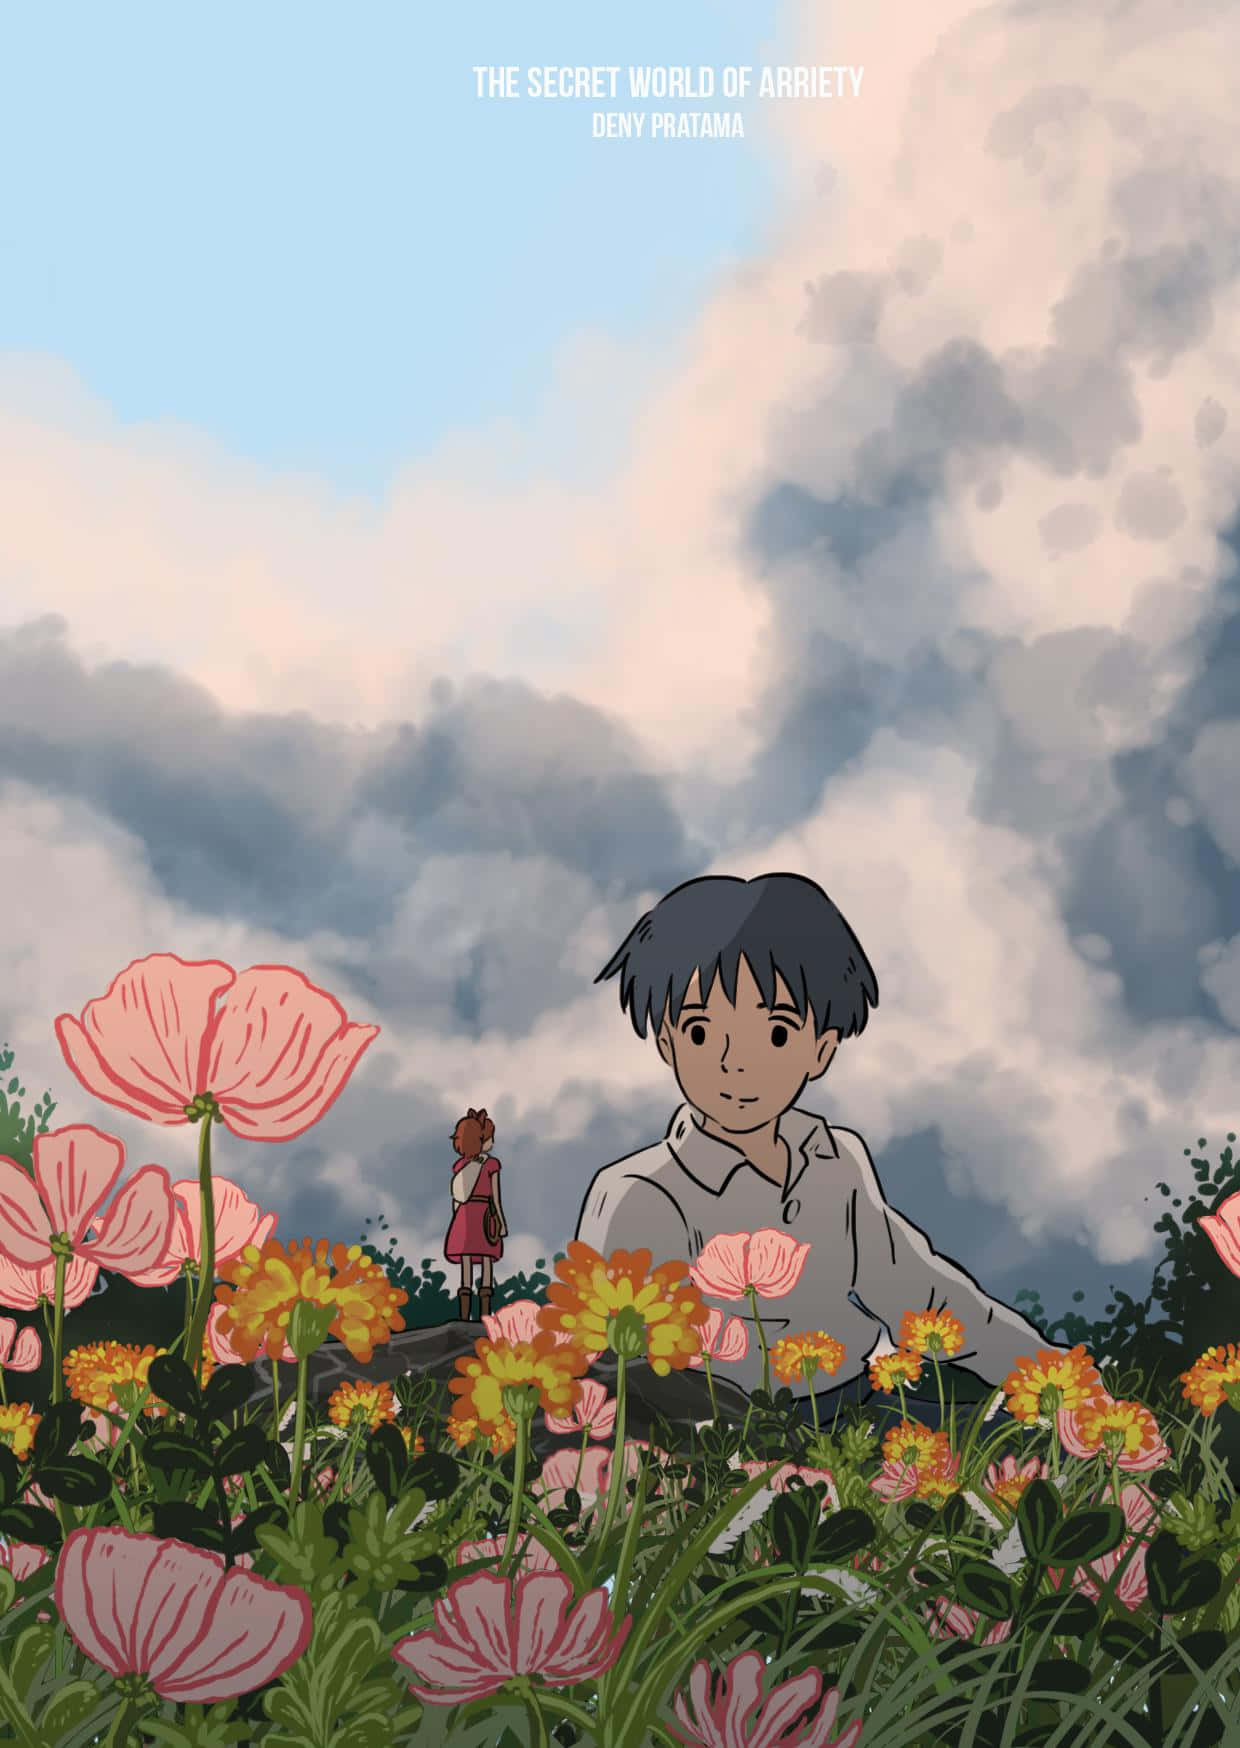 En æstetisk visuel repræsentation af Ghiblis fantastiske verden Wallpaper